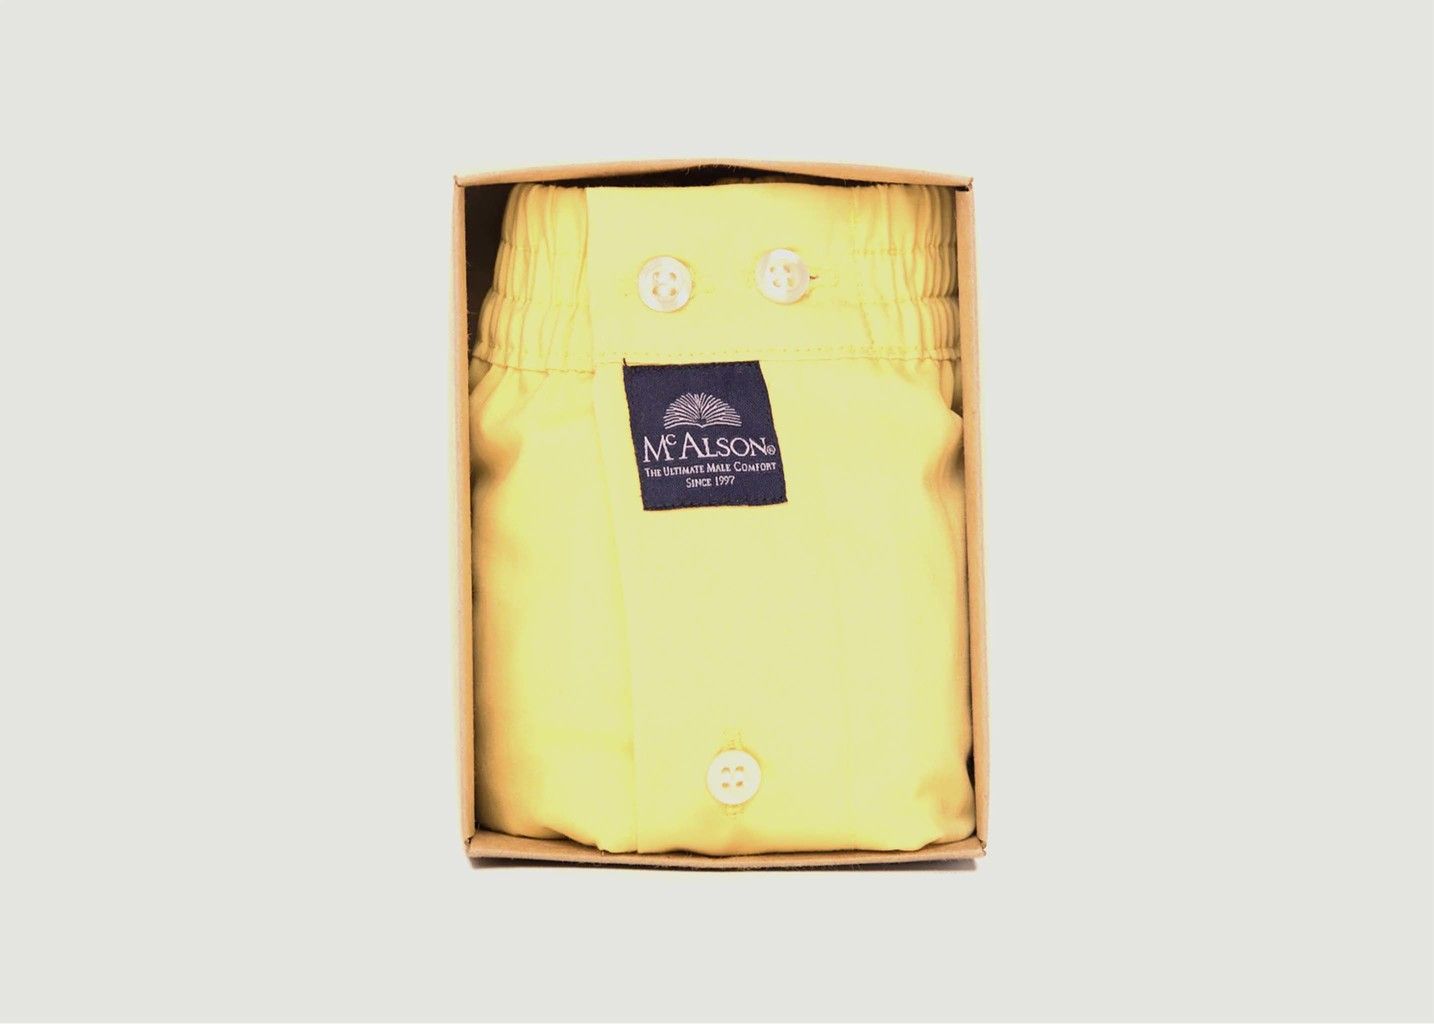 Unifarbene Unterhose aus Baumwolle - Mc Alson